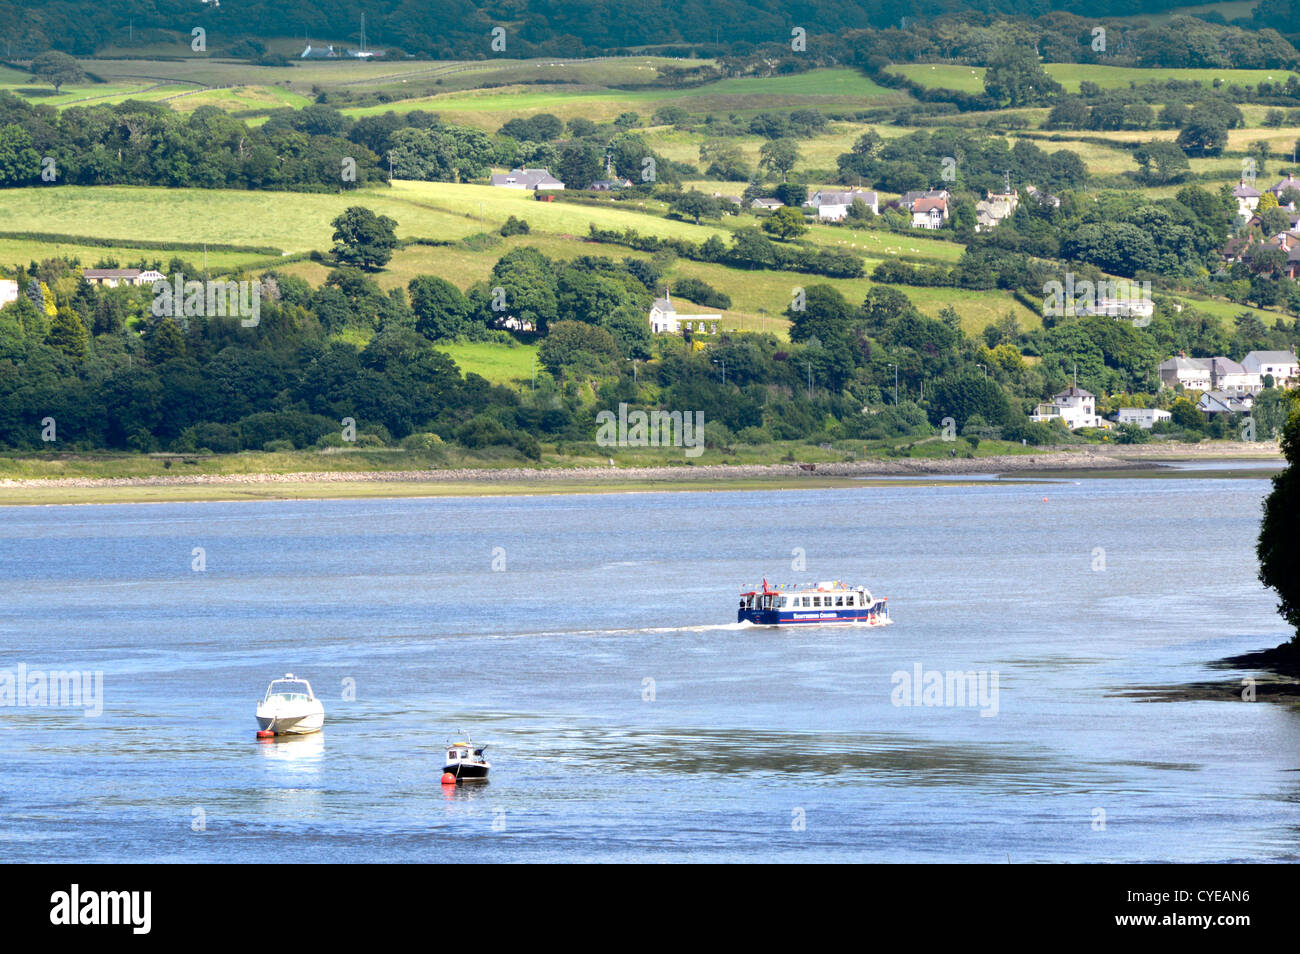 Le bateau de croisière touristique se dirige vers la vallée de Conwy après son départ Conwy paysage montagneux au-delà de Clwyd nord du pays de Galles Royaume-Uni Banque D'Images